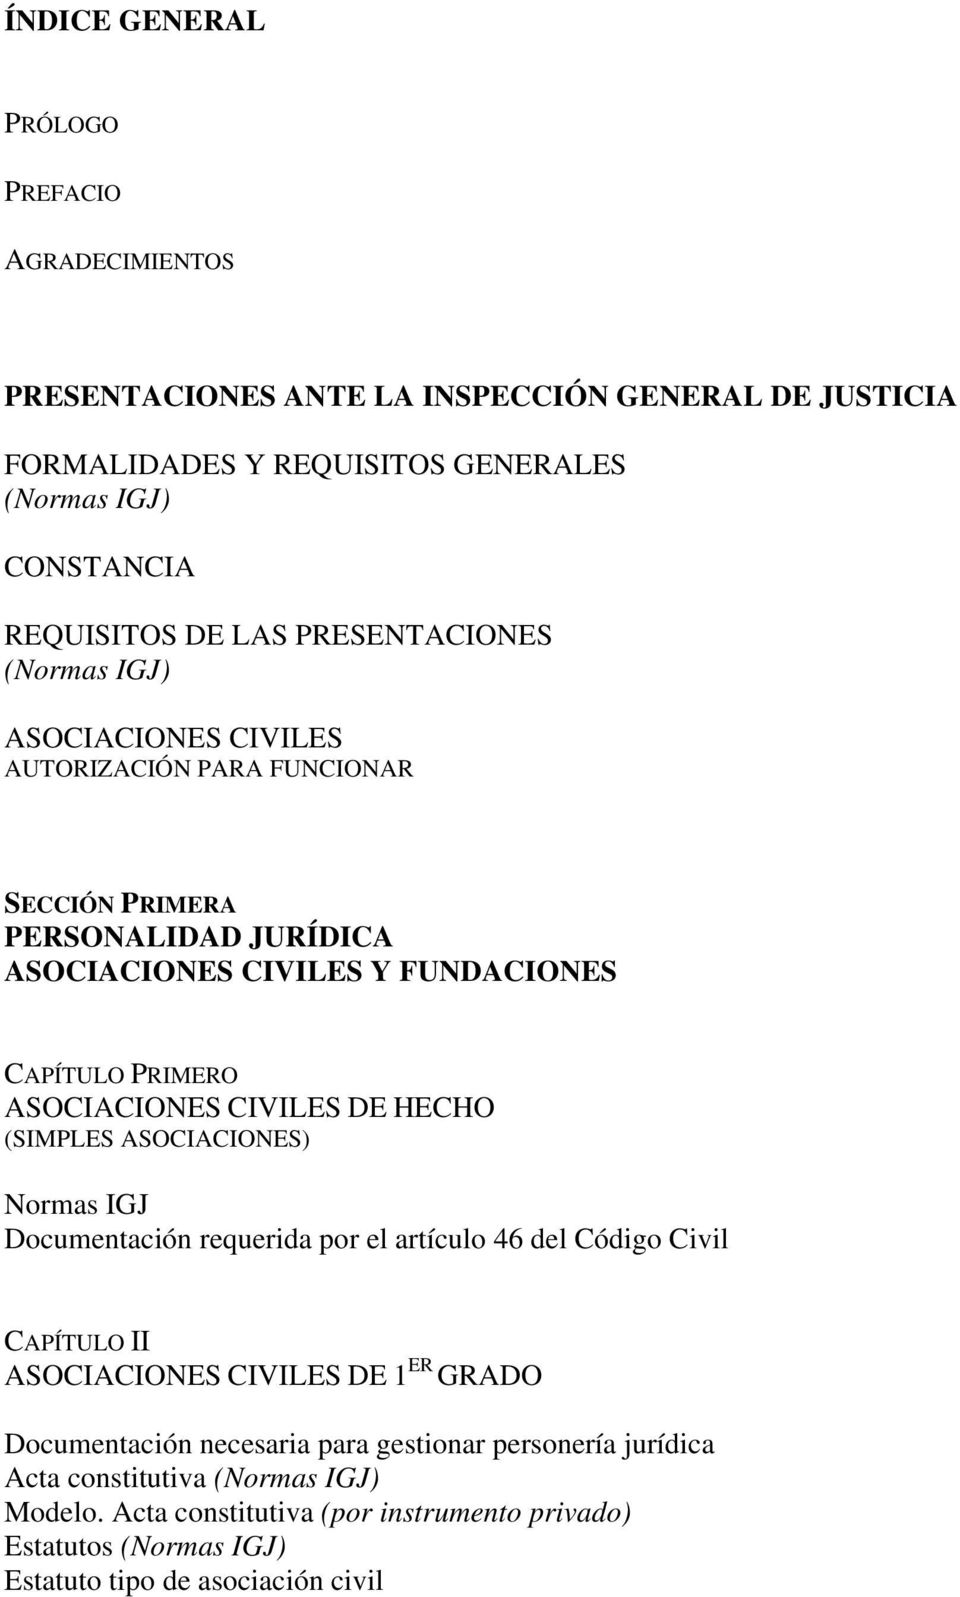 PRESENTACIONES ANTE LA INSPECCIÓN GENERAL DE JUSTICIA - PDF Descargar libre